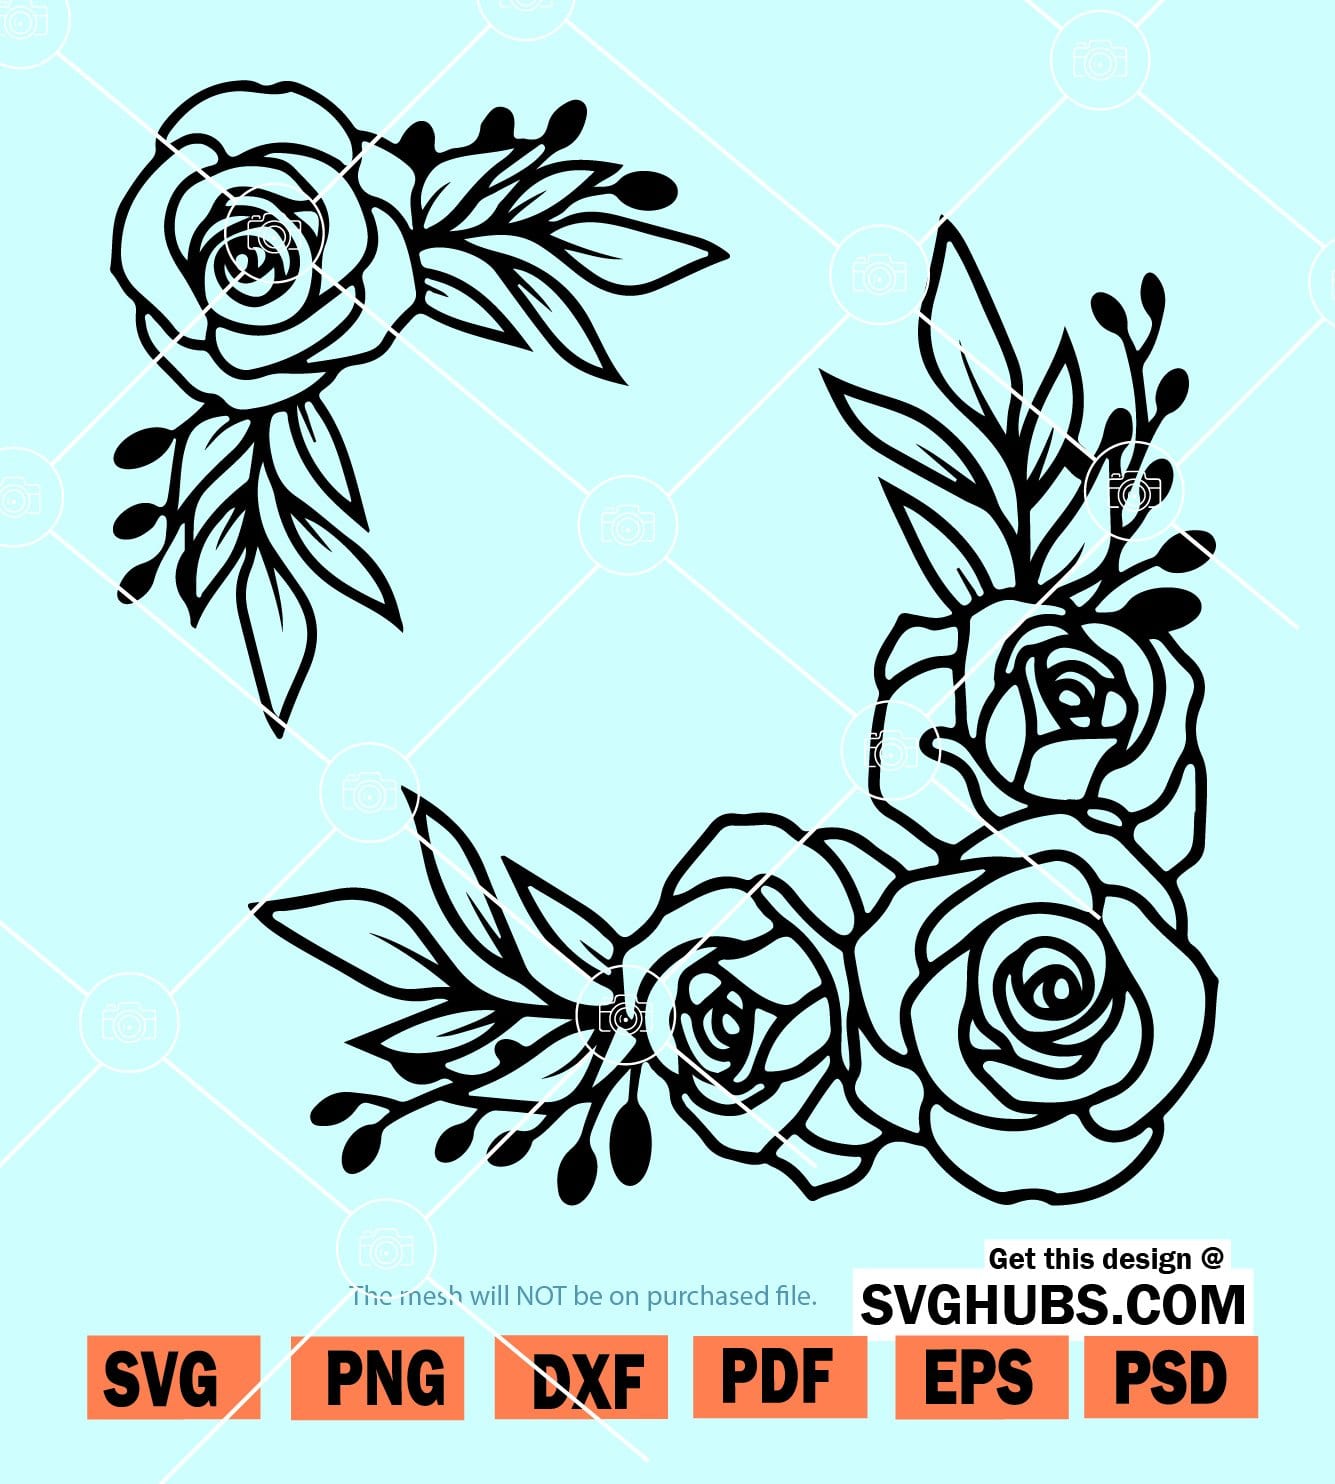 Flower frame SVG, floral frame SVG, Flower circle SVG